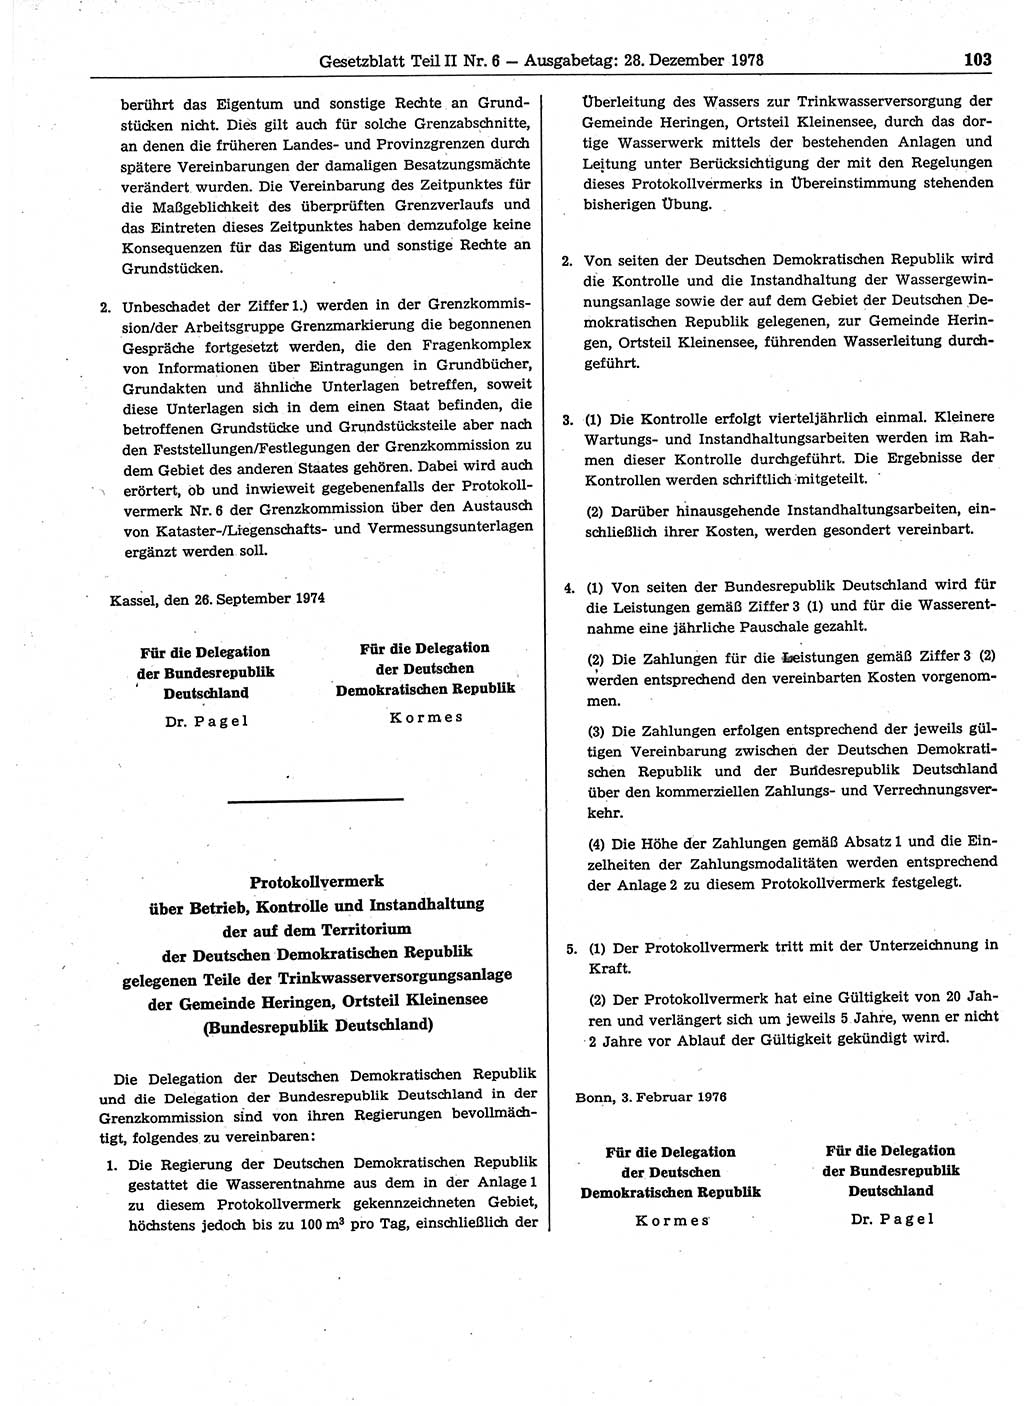 Gesetzblatt (GBl.) der Deutschen Demokratischen Republik (DDR) Teil ⅠⅠ 1978, Seite 103 (GBl. DDR ⅠⅠ 1978, S. 103)